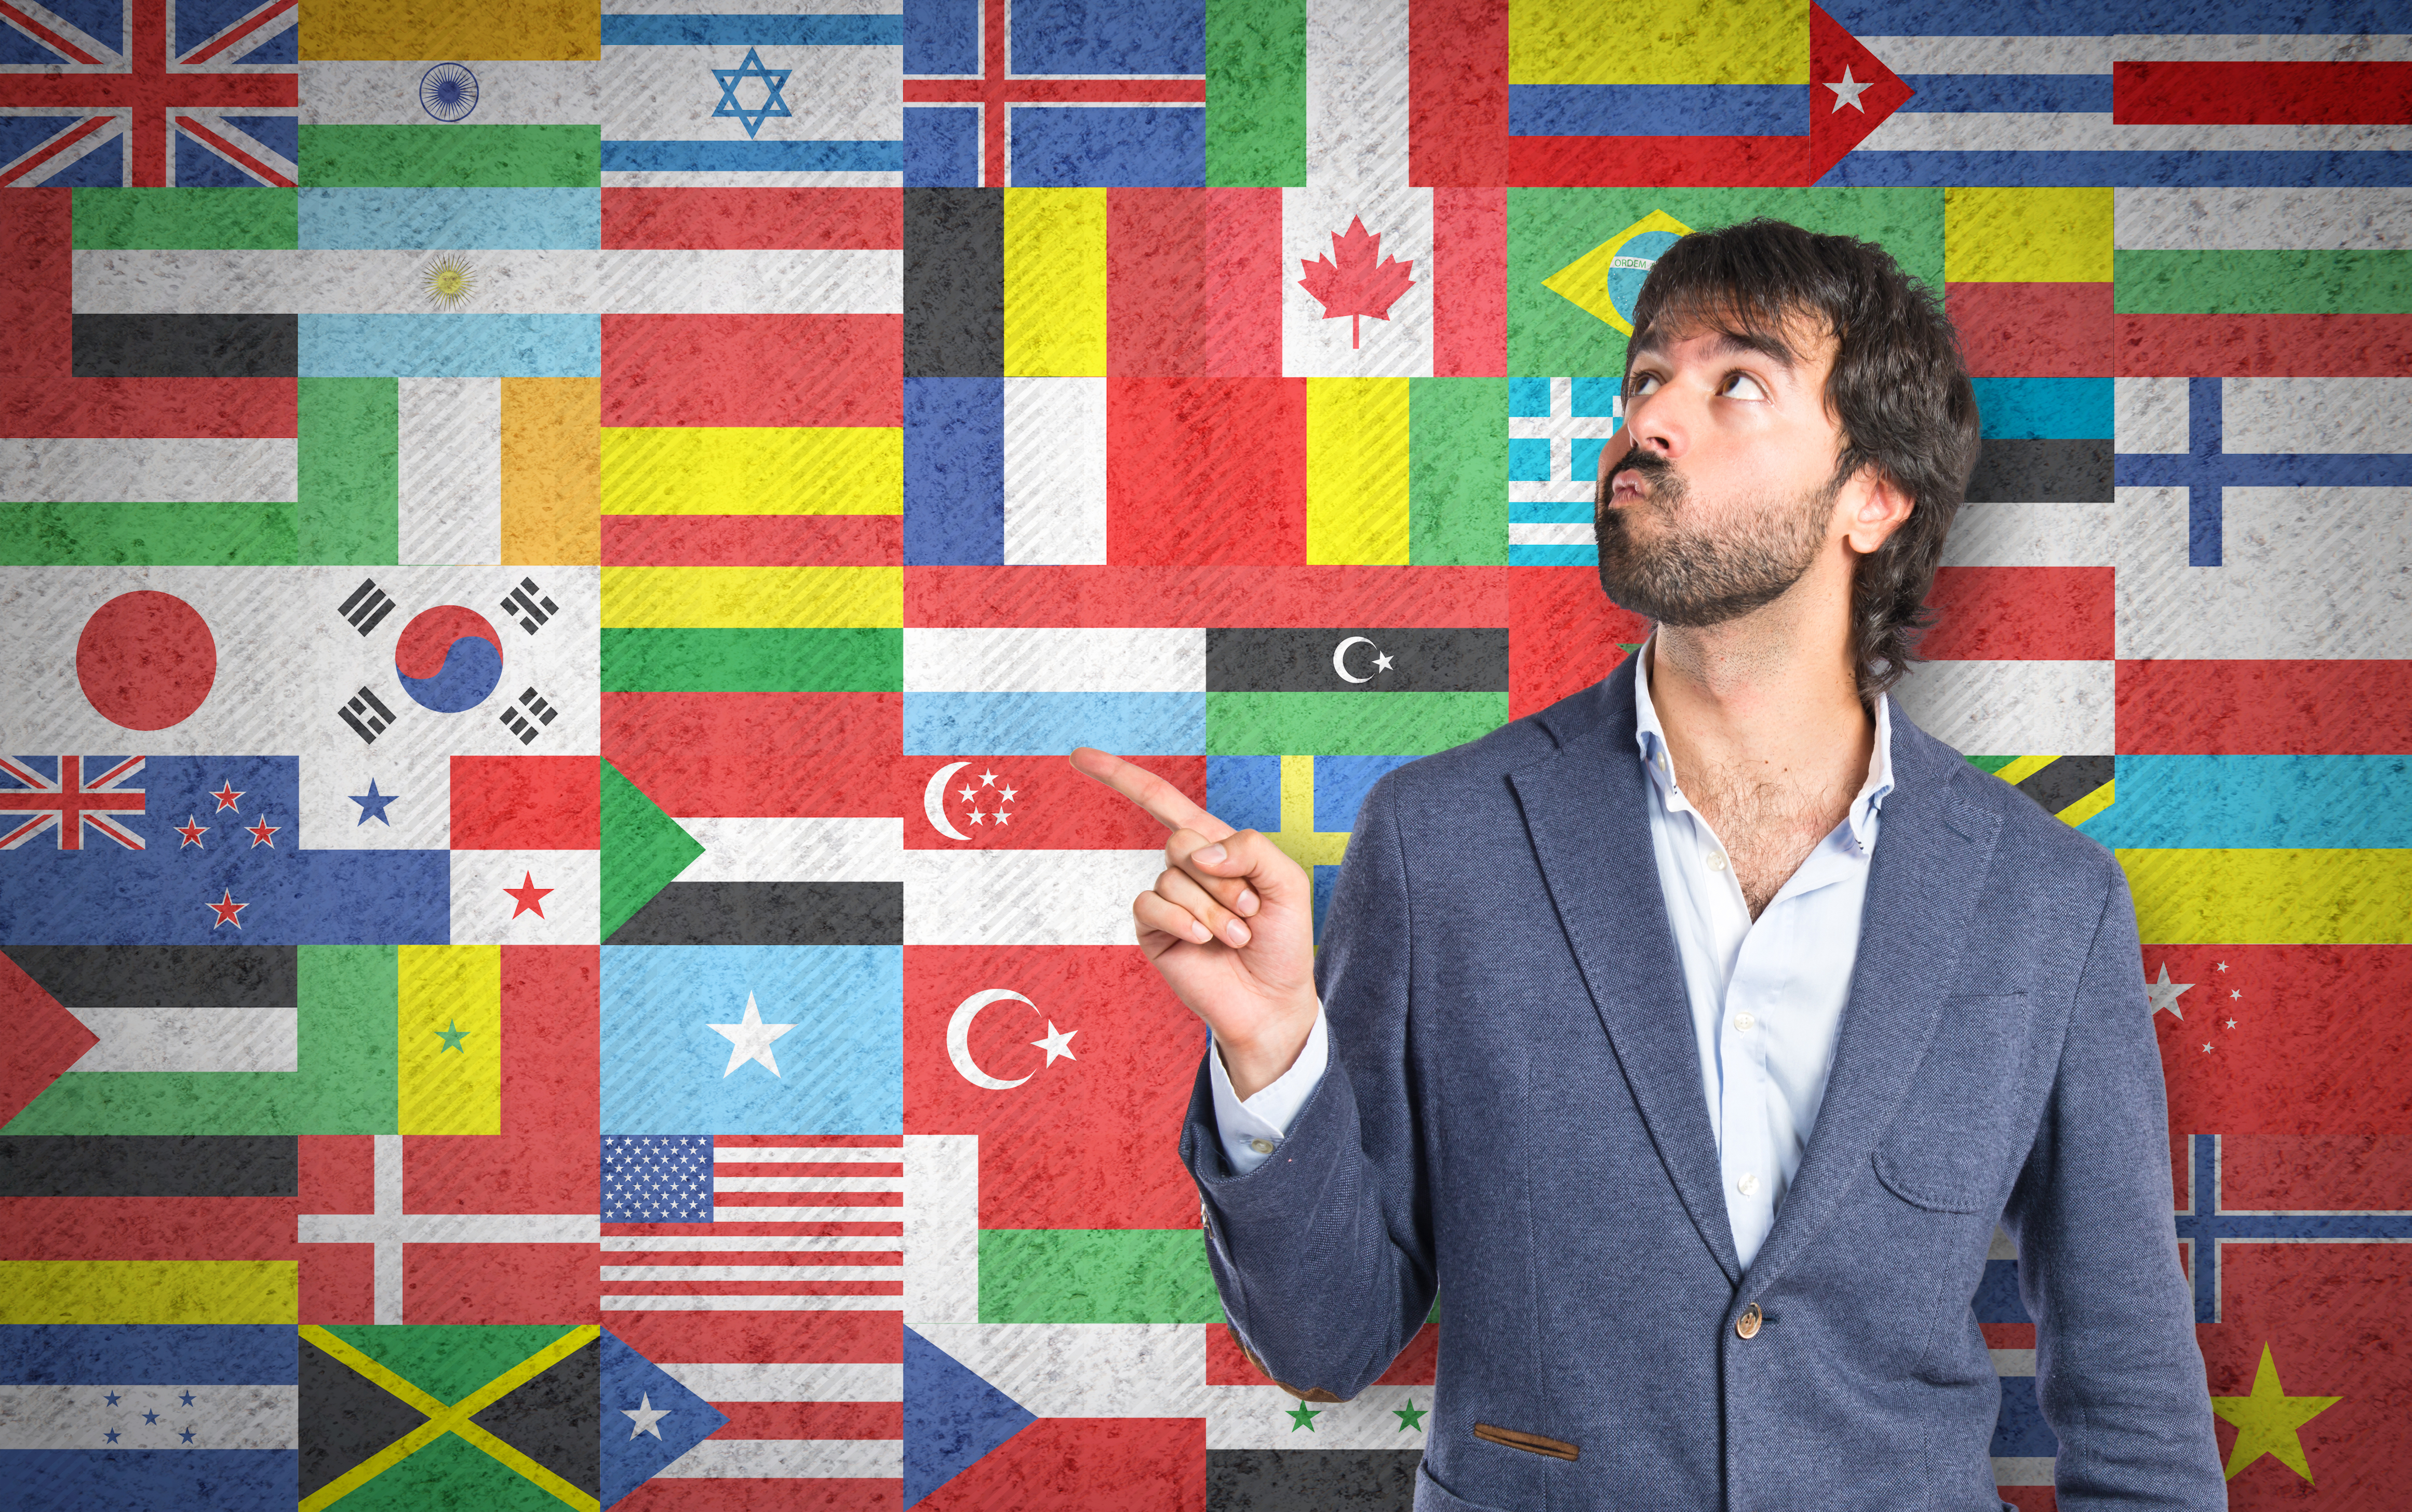 Aprender nuevos idiomas puede traer beneficios tanto cognitivos como emocionales y sociales. (Foto Prensa Libre: Shutterstock)